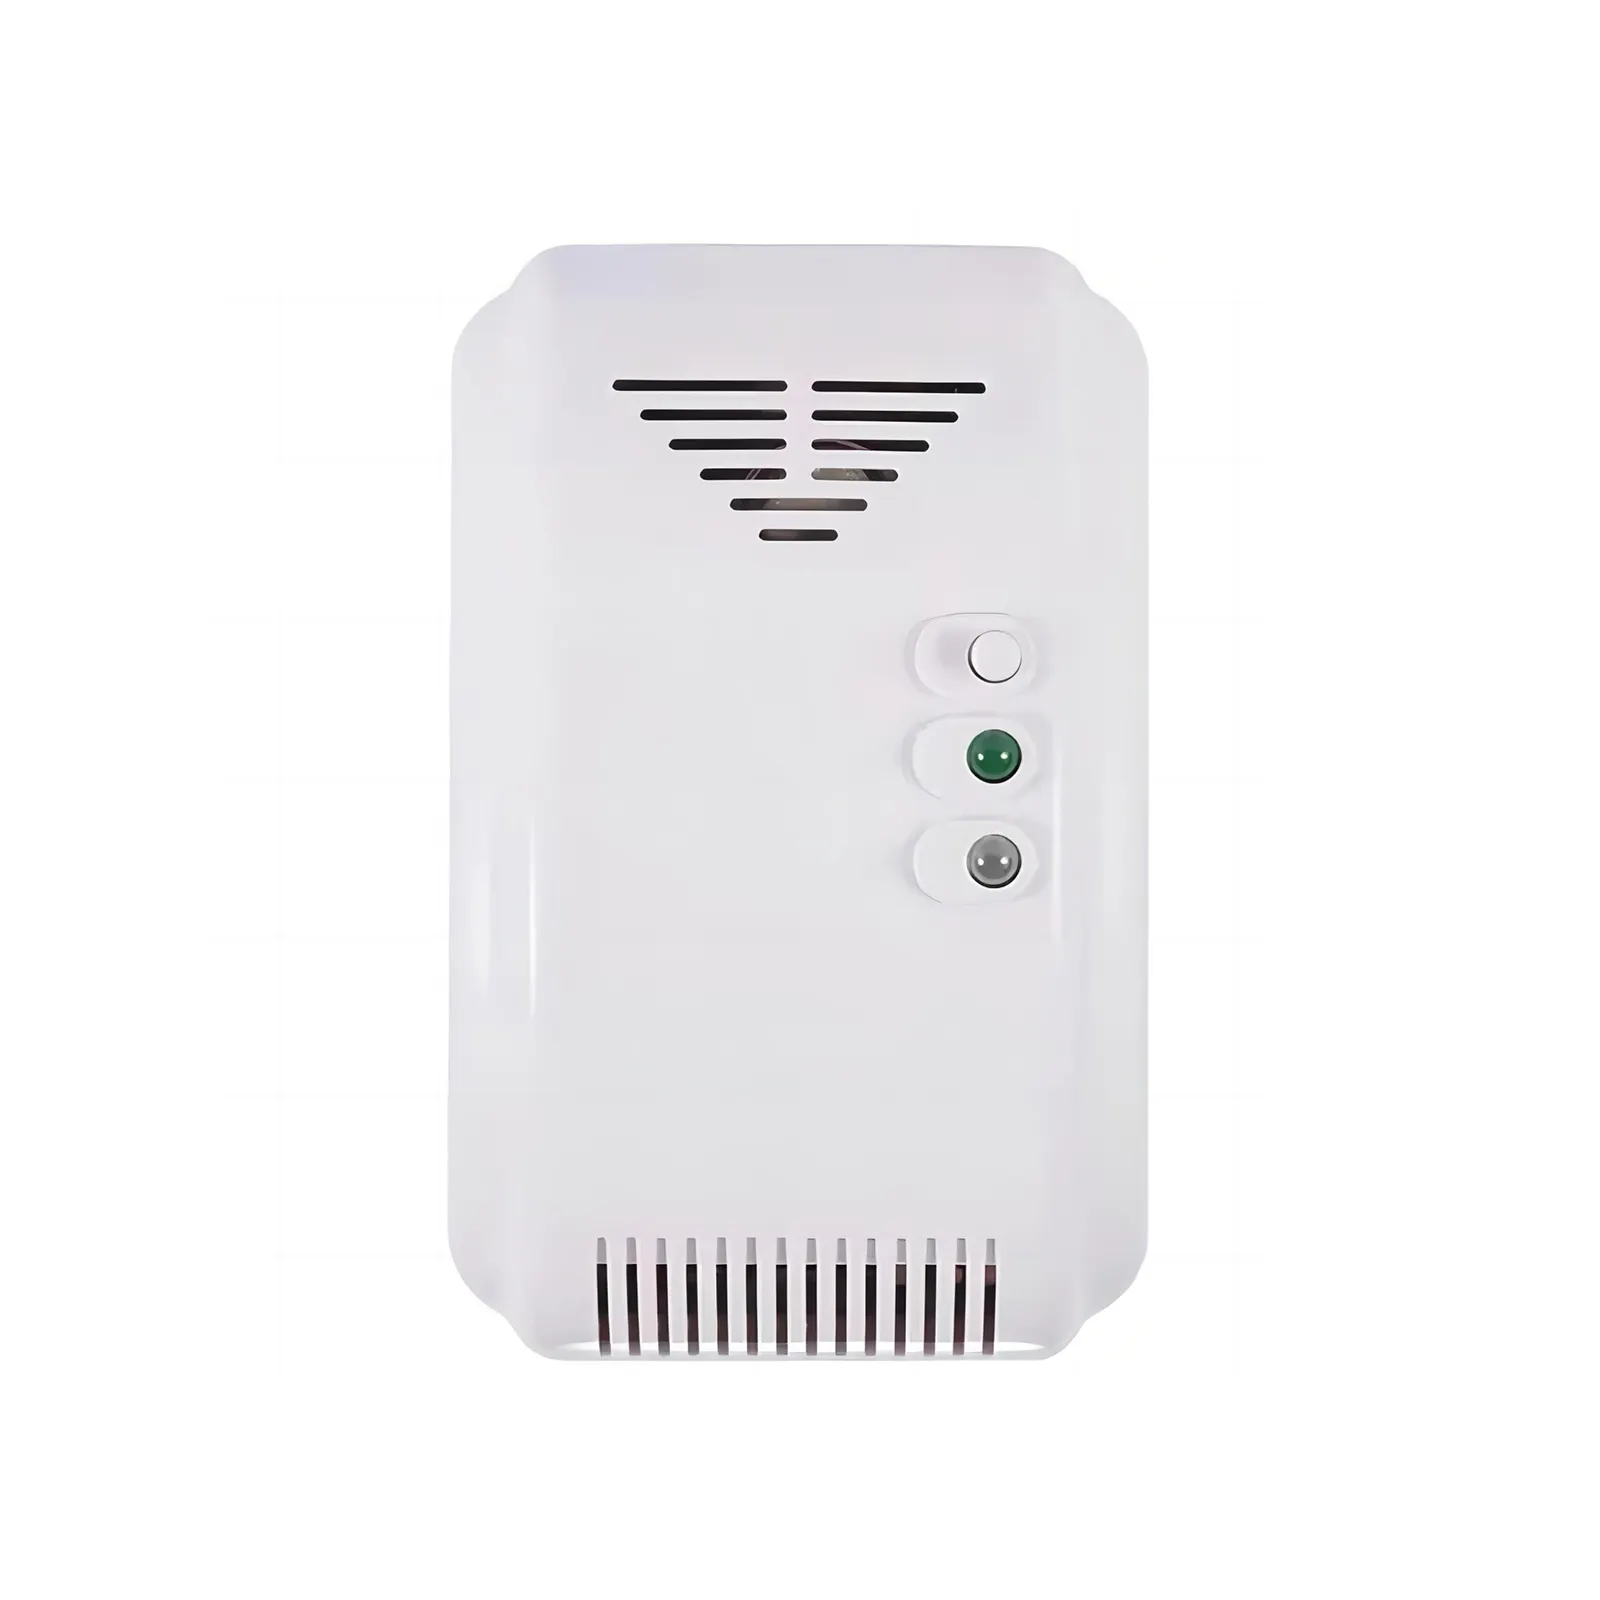 Detektor Kebocoran Gas 220V Terpasang Di Dinding, Perangkat Deteksi Kebocoran Gas dengan Suara & Alarm Lampu Kilat, Keluaran Relay